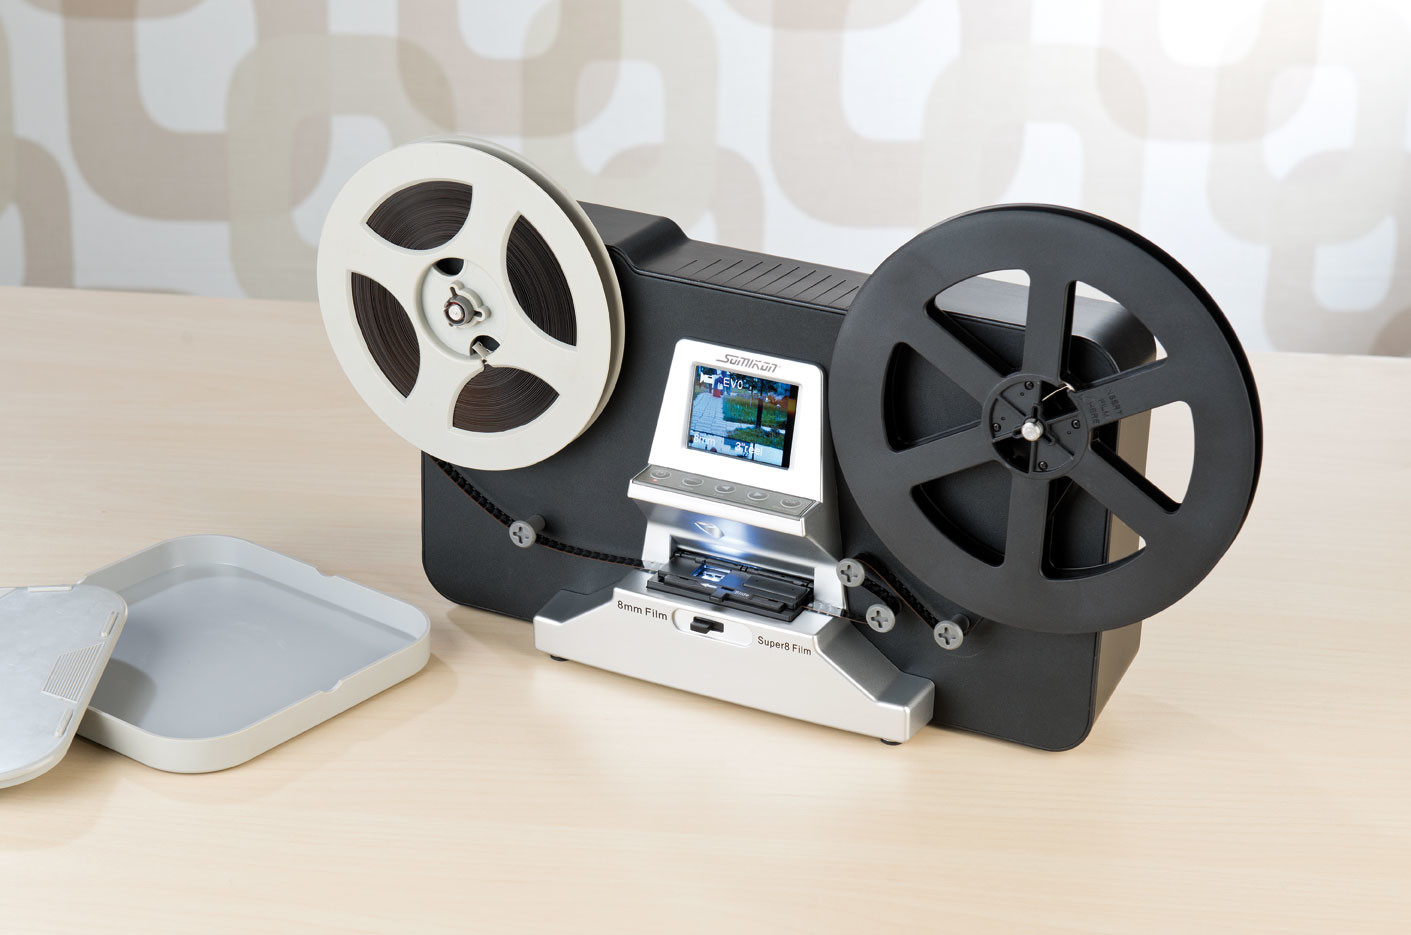 Convertisseur numériseur 8 mm et Super 8 films, scanner convertit